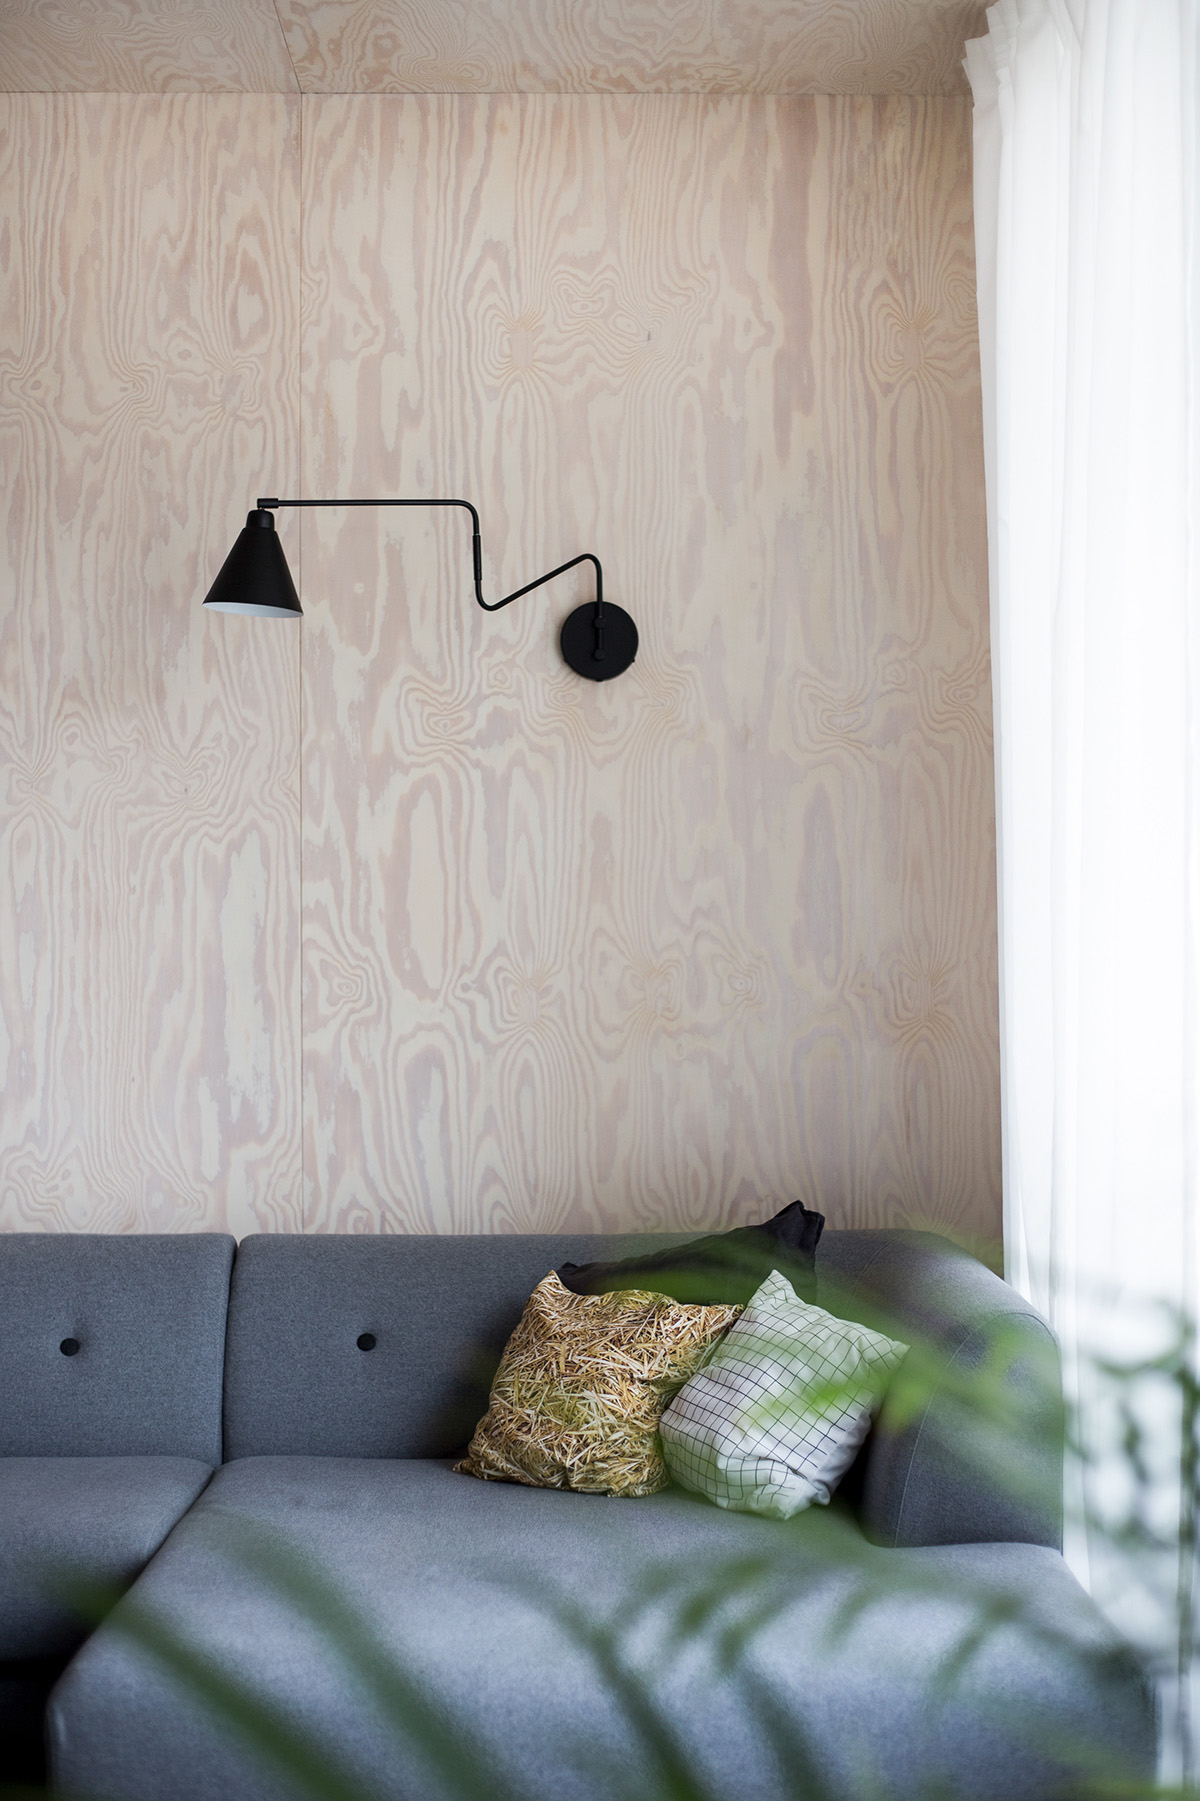 Một chiếc đèn tường màu đen với thiết kế ấn tượng trở thành điểm nhấn cho bức tường gỗ màu sáng. Chiếc đèn đảm nhận vai trò cung cấp ánh sáng cho khu vực ghế sofa.